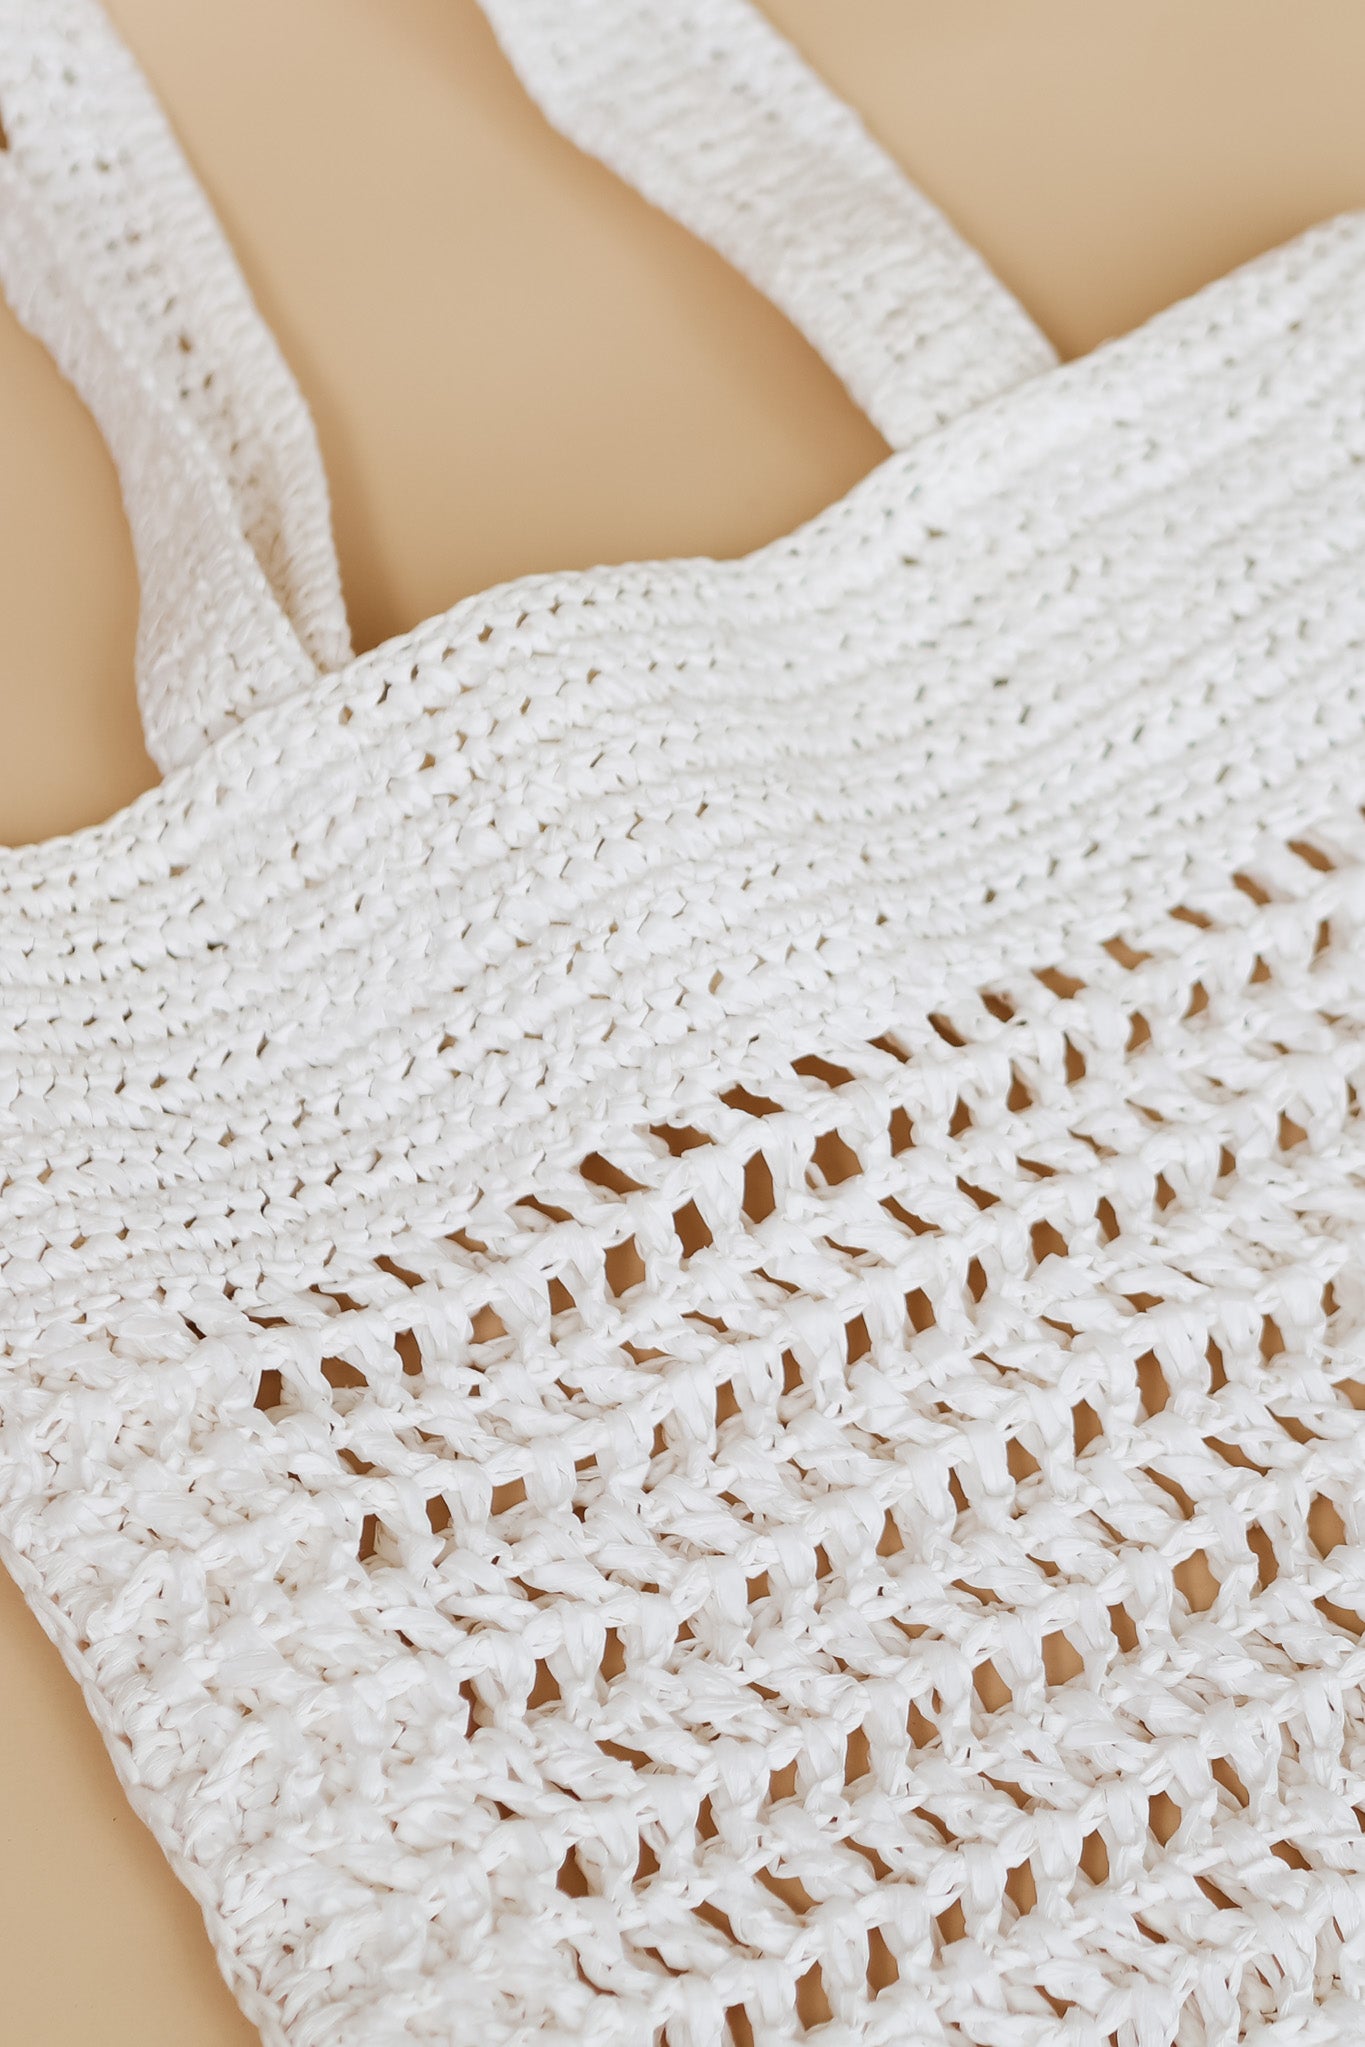 Reign Crochet Bag (White)